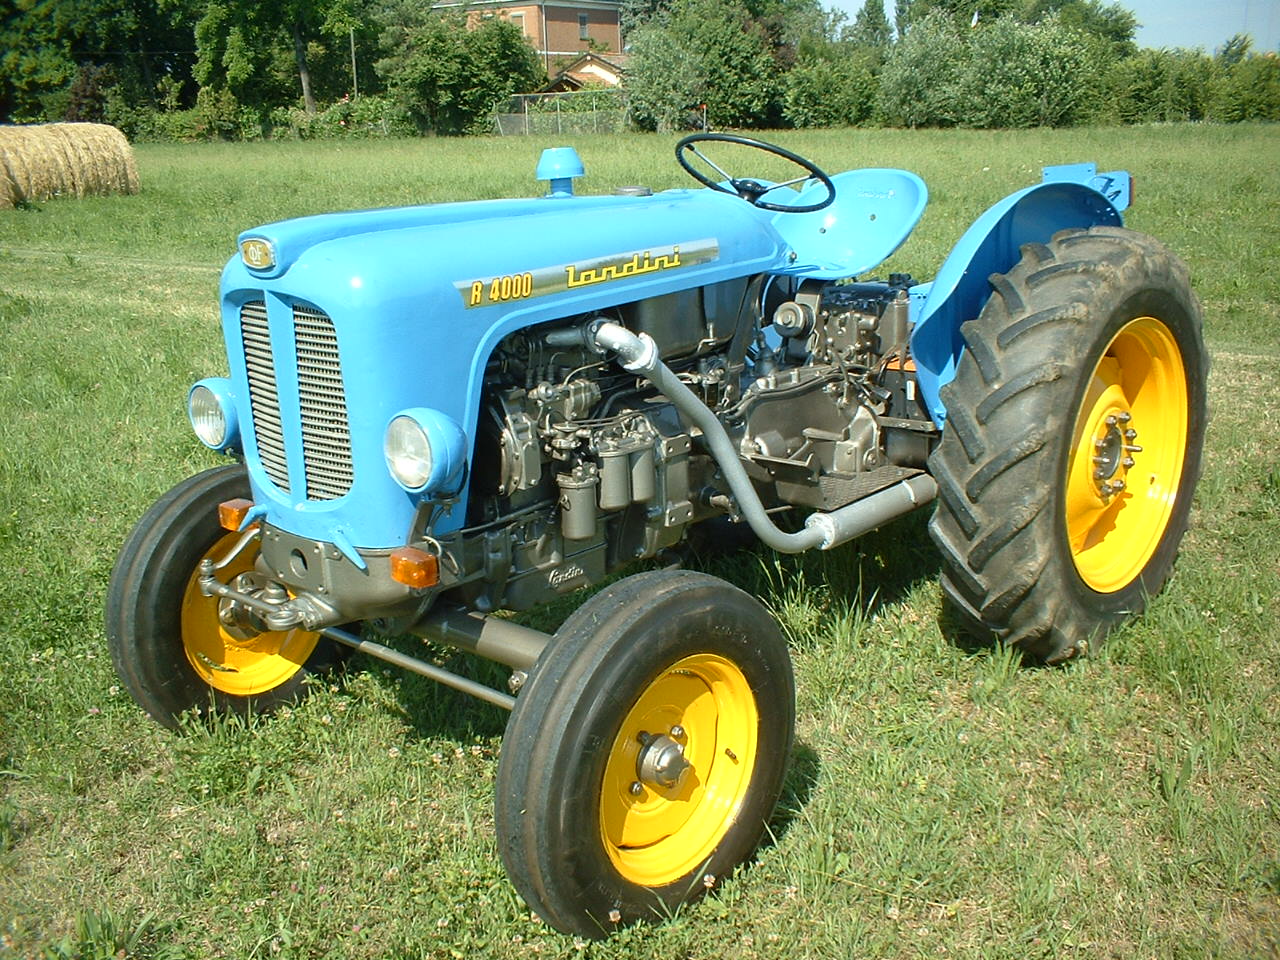 Landini R4000